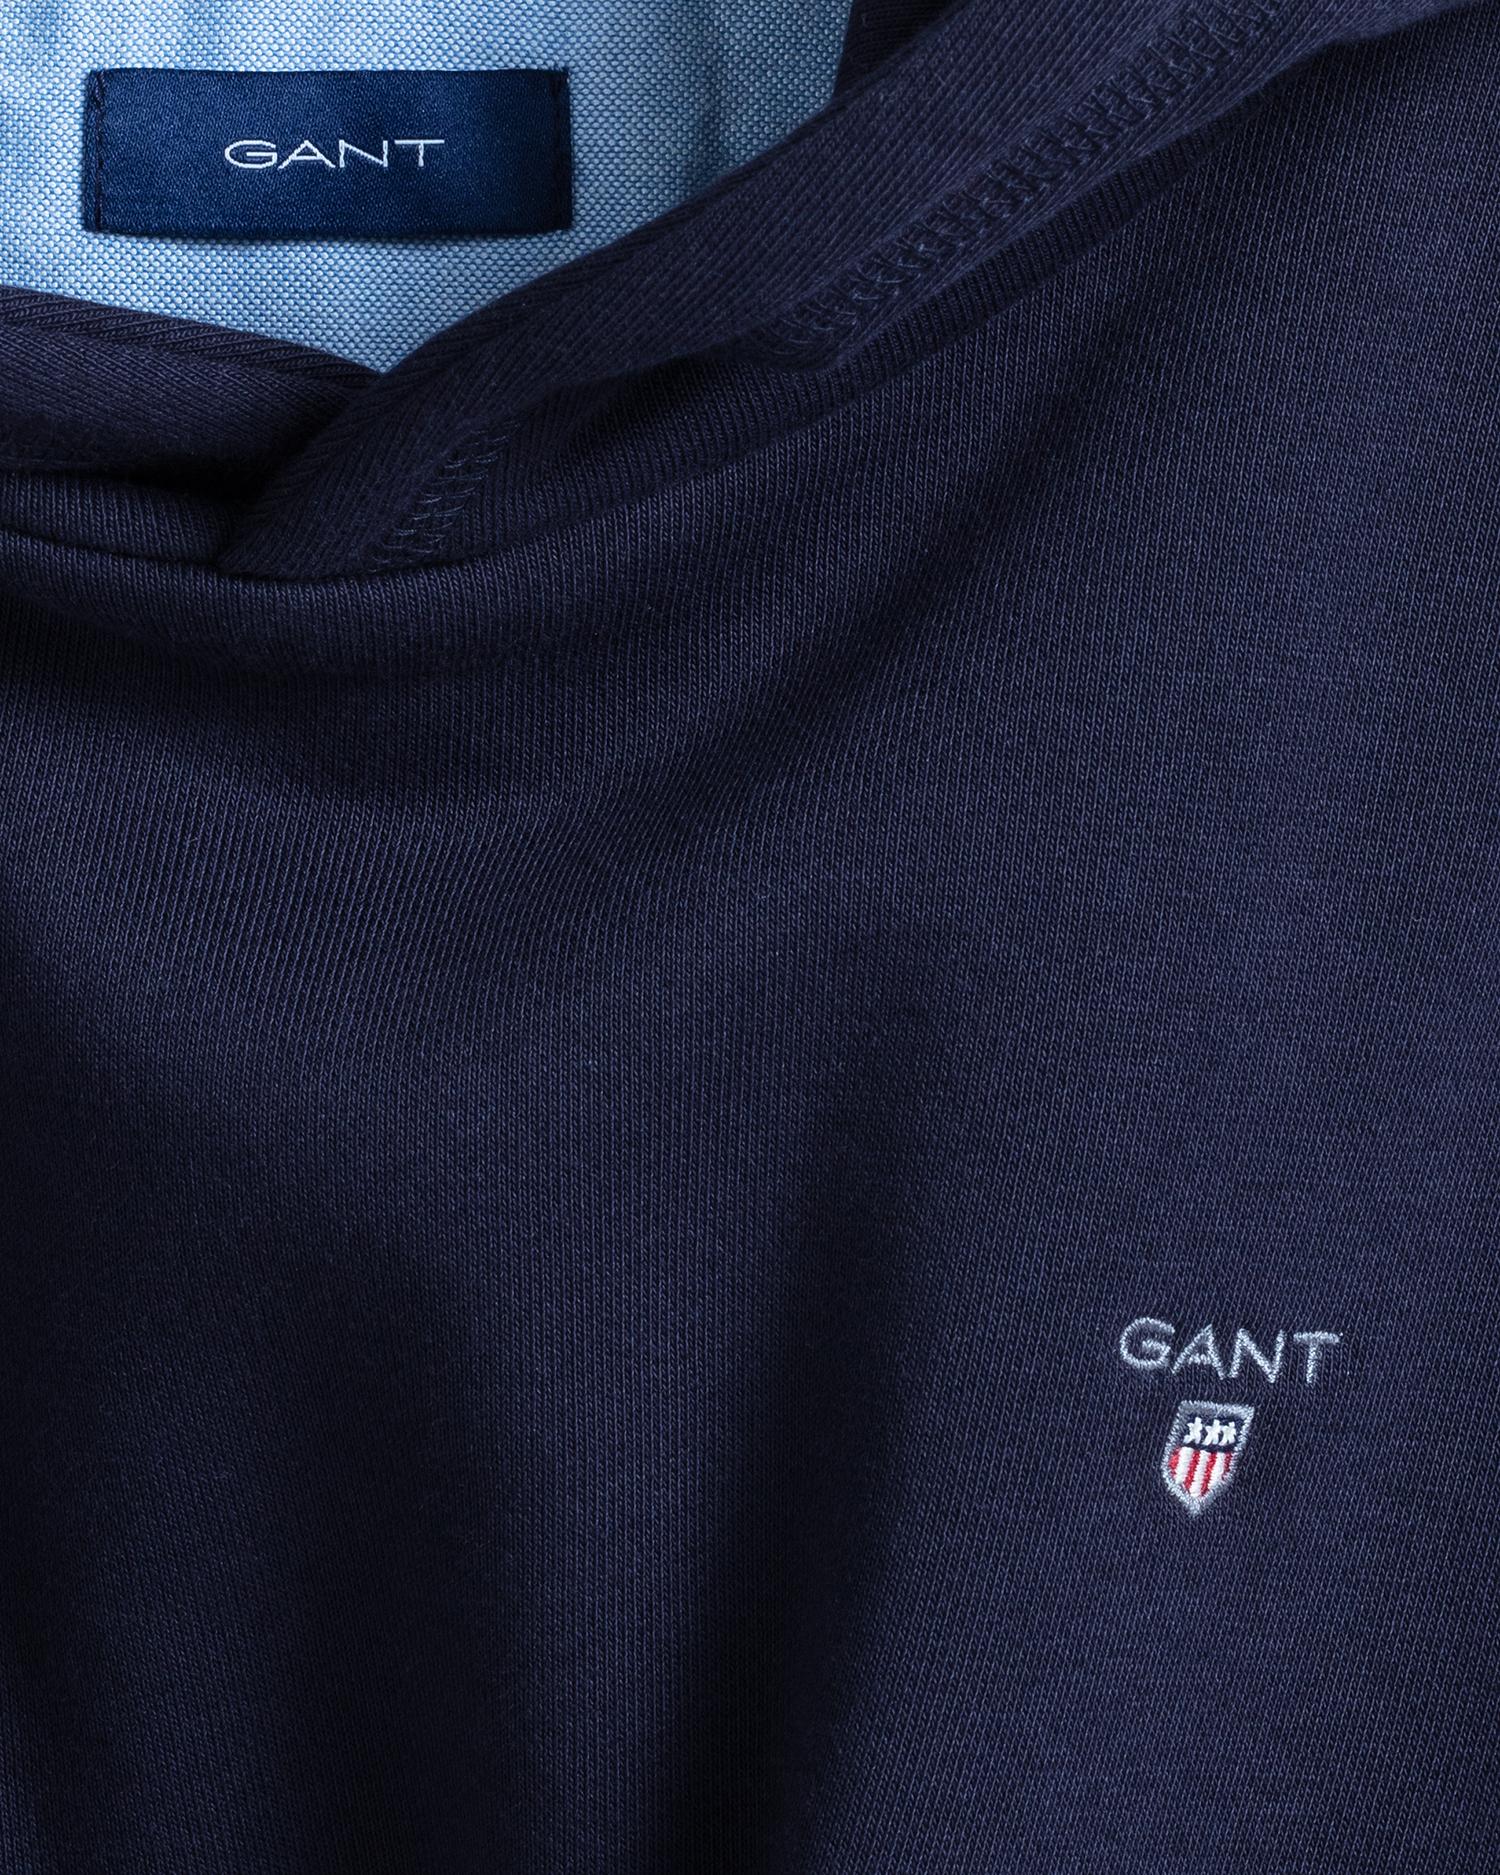 Gant navy boys jumper close up of logo